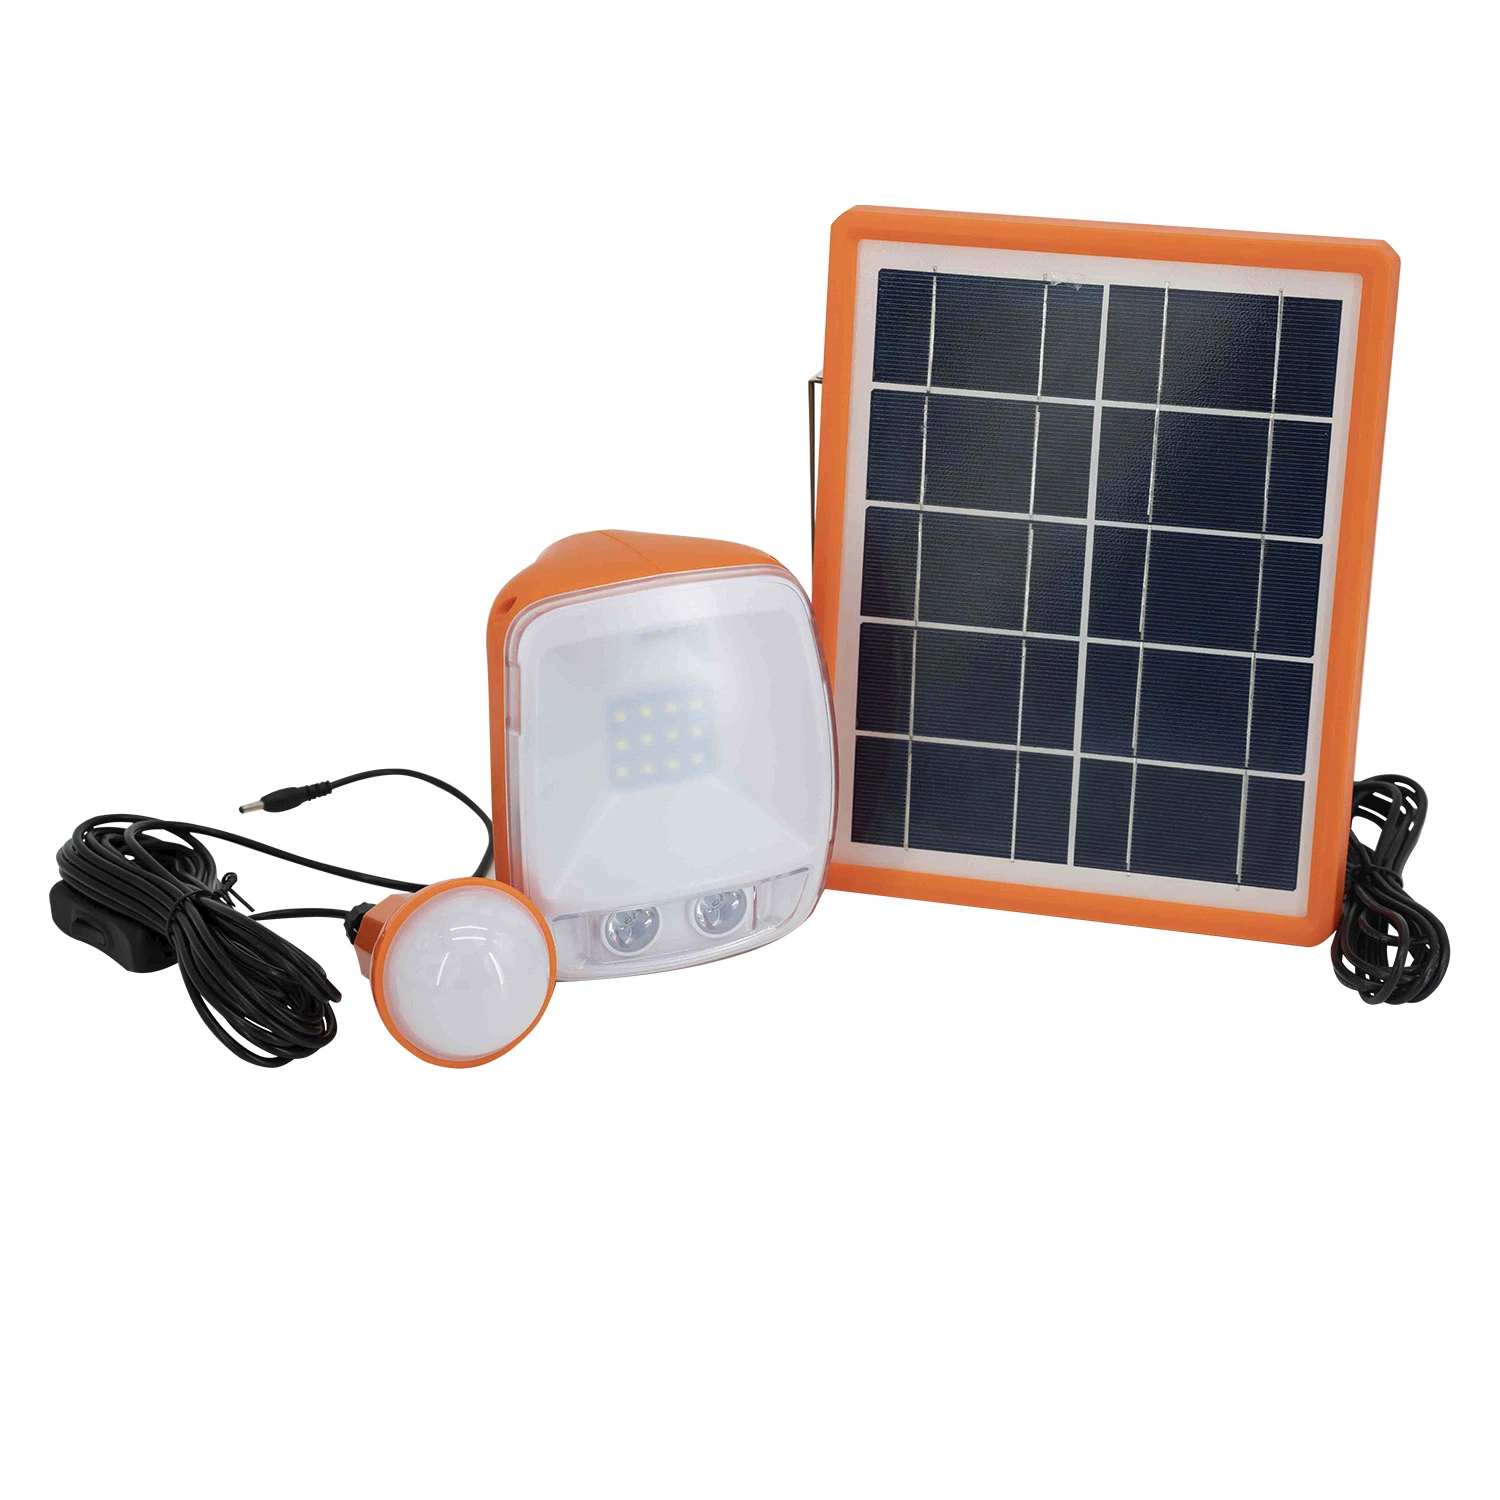 نظام الطاقة الشمسية الصغيرة المحمول لمجموعة اللوحة الشمسية المنزلية